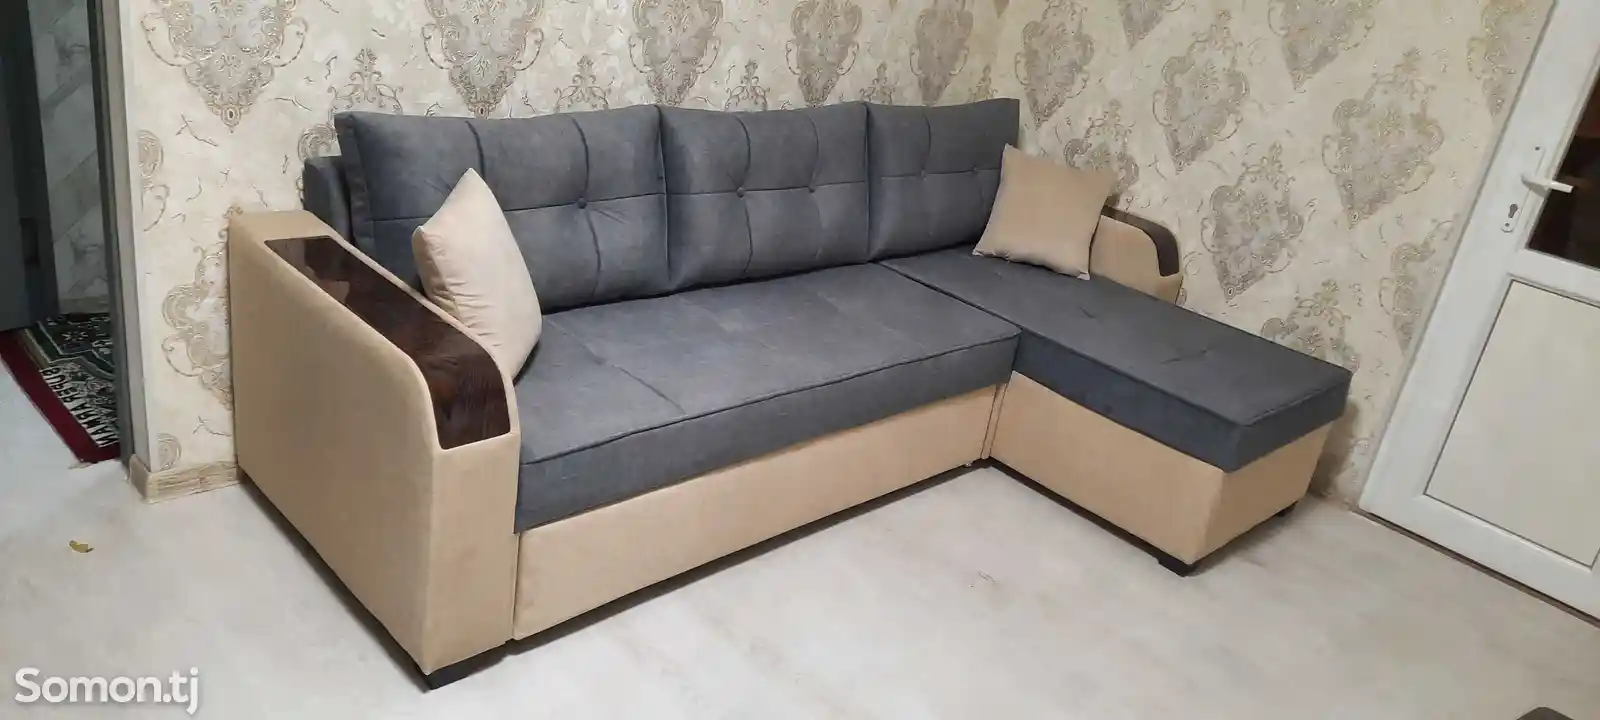 Раскладной диван хайтек на заказ-3